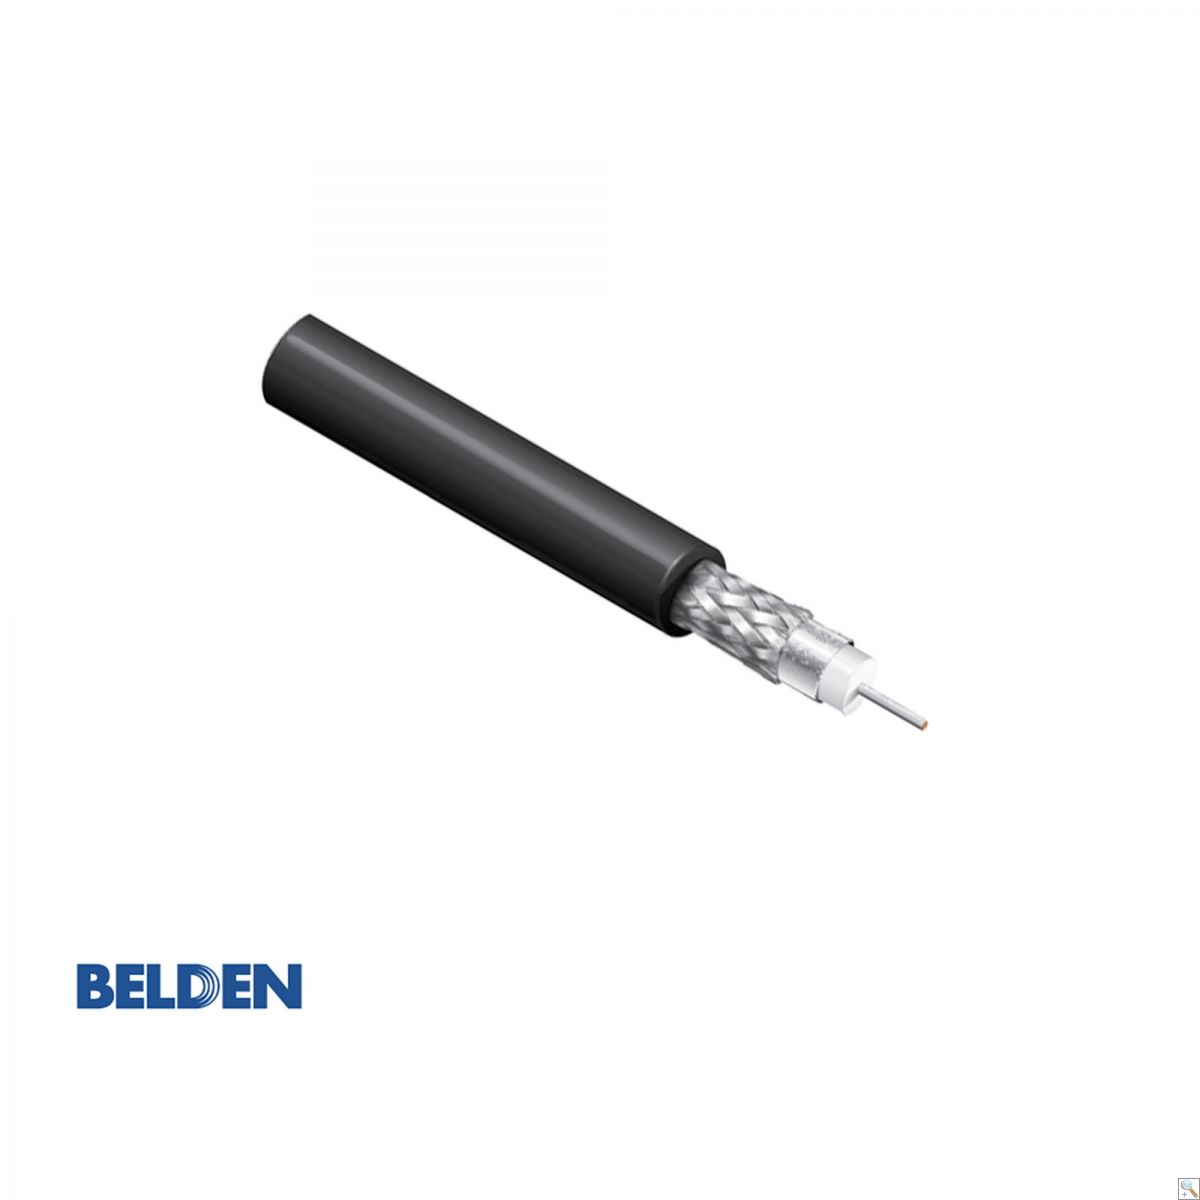 Belden 4694R - 305M